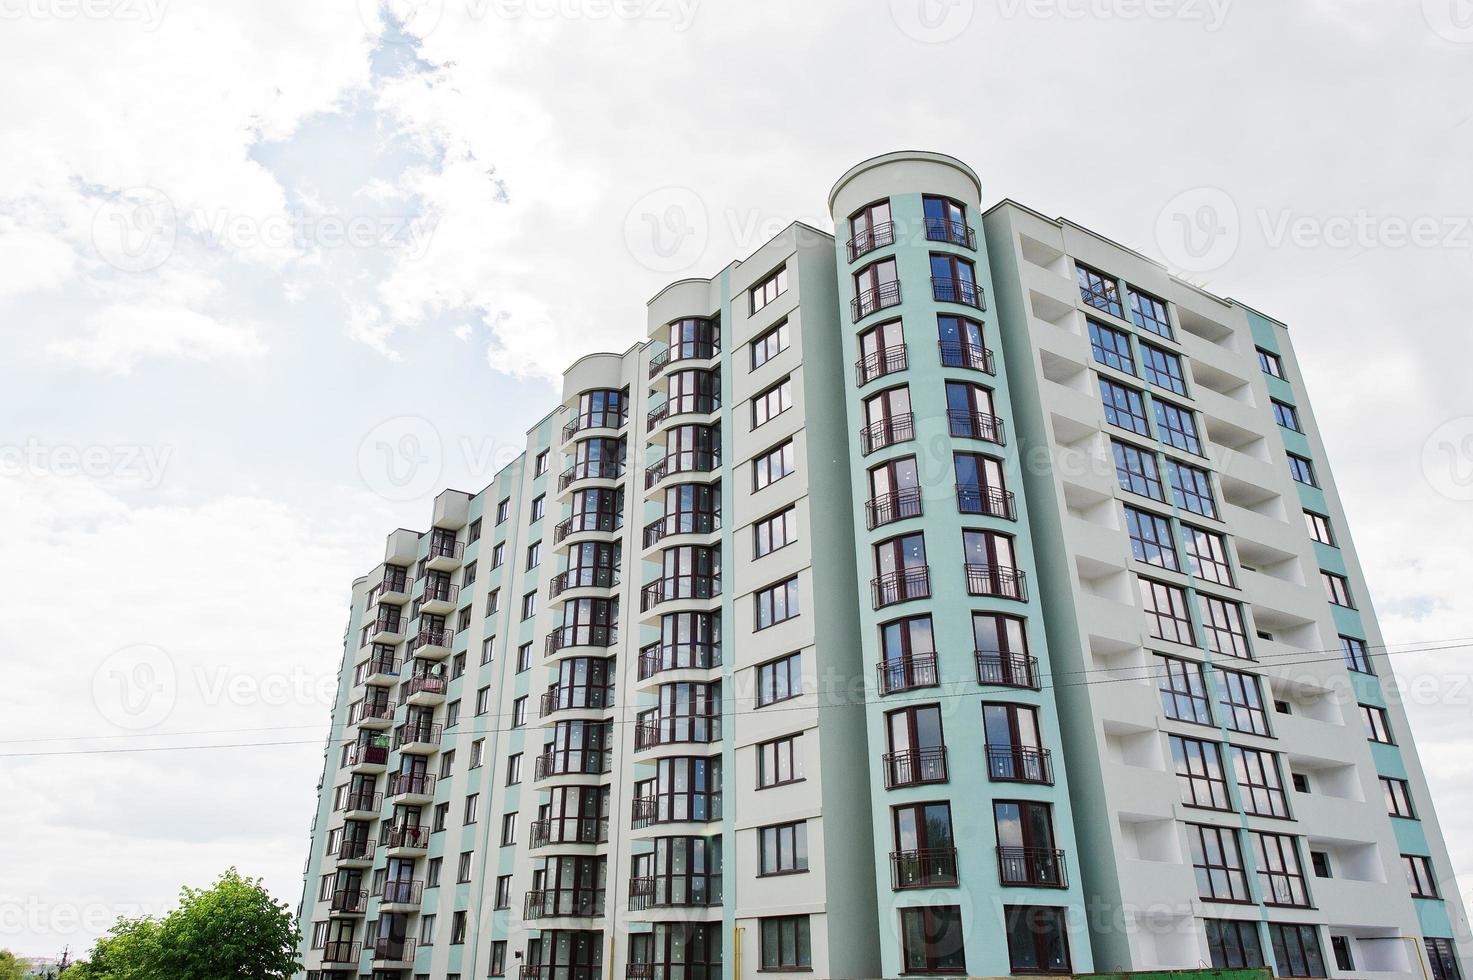 balkon des neuen modernen türkisfarbenen mehrstöckigen wohnhauses im wohngebiet am sonnigen blauen himmel. foto